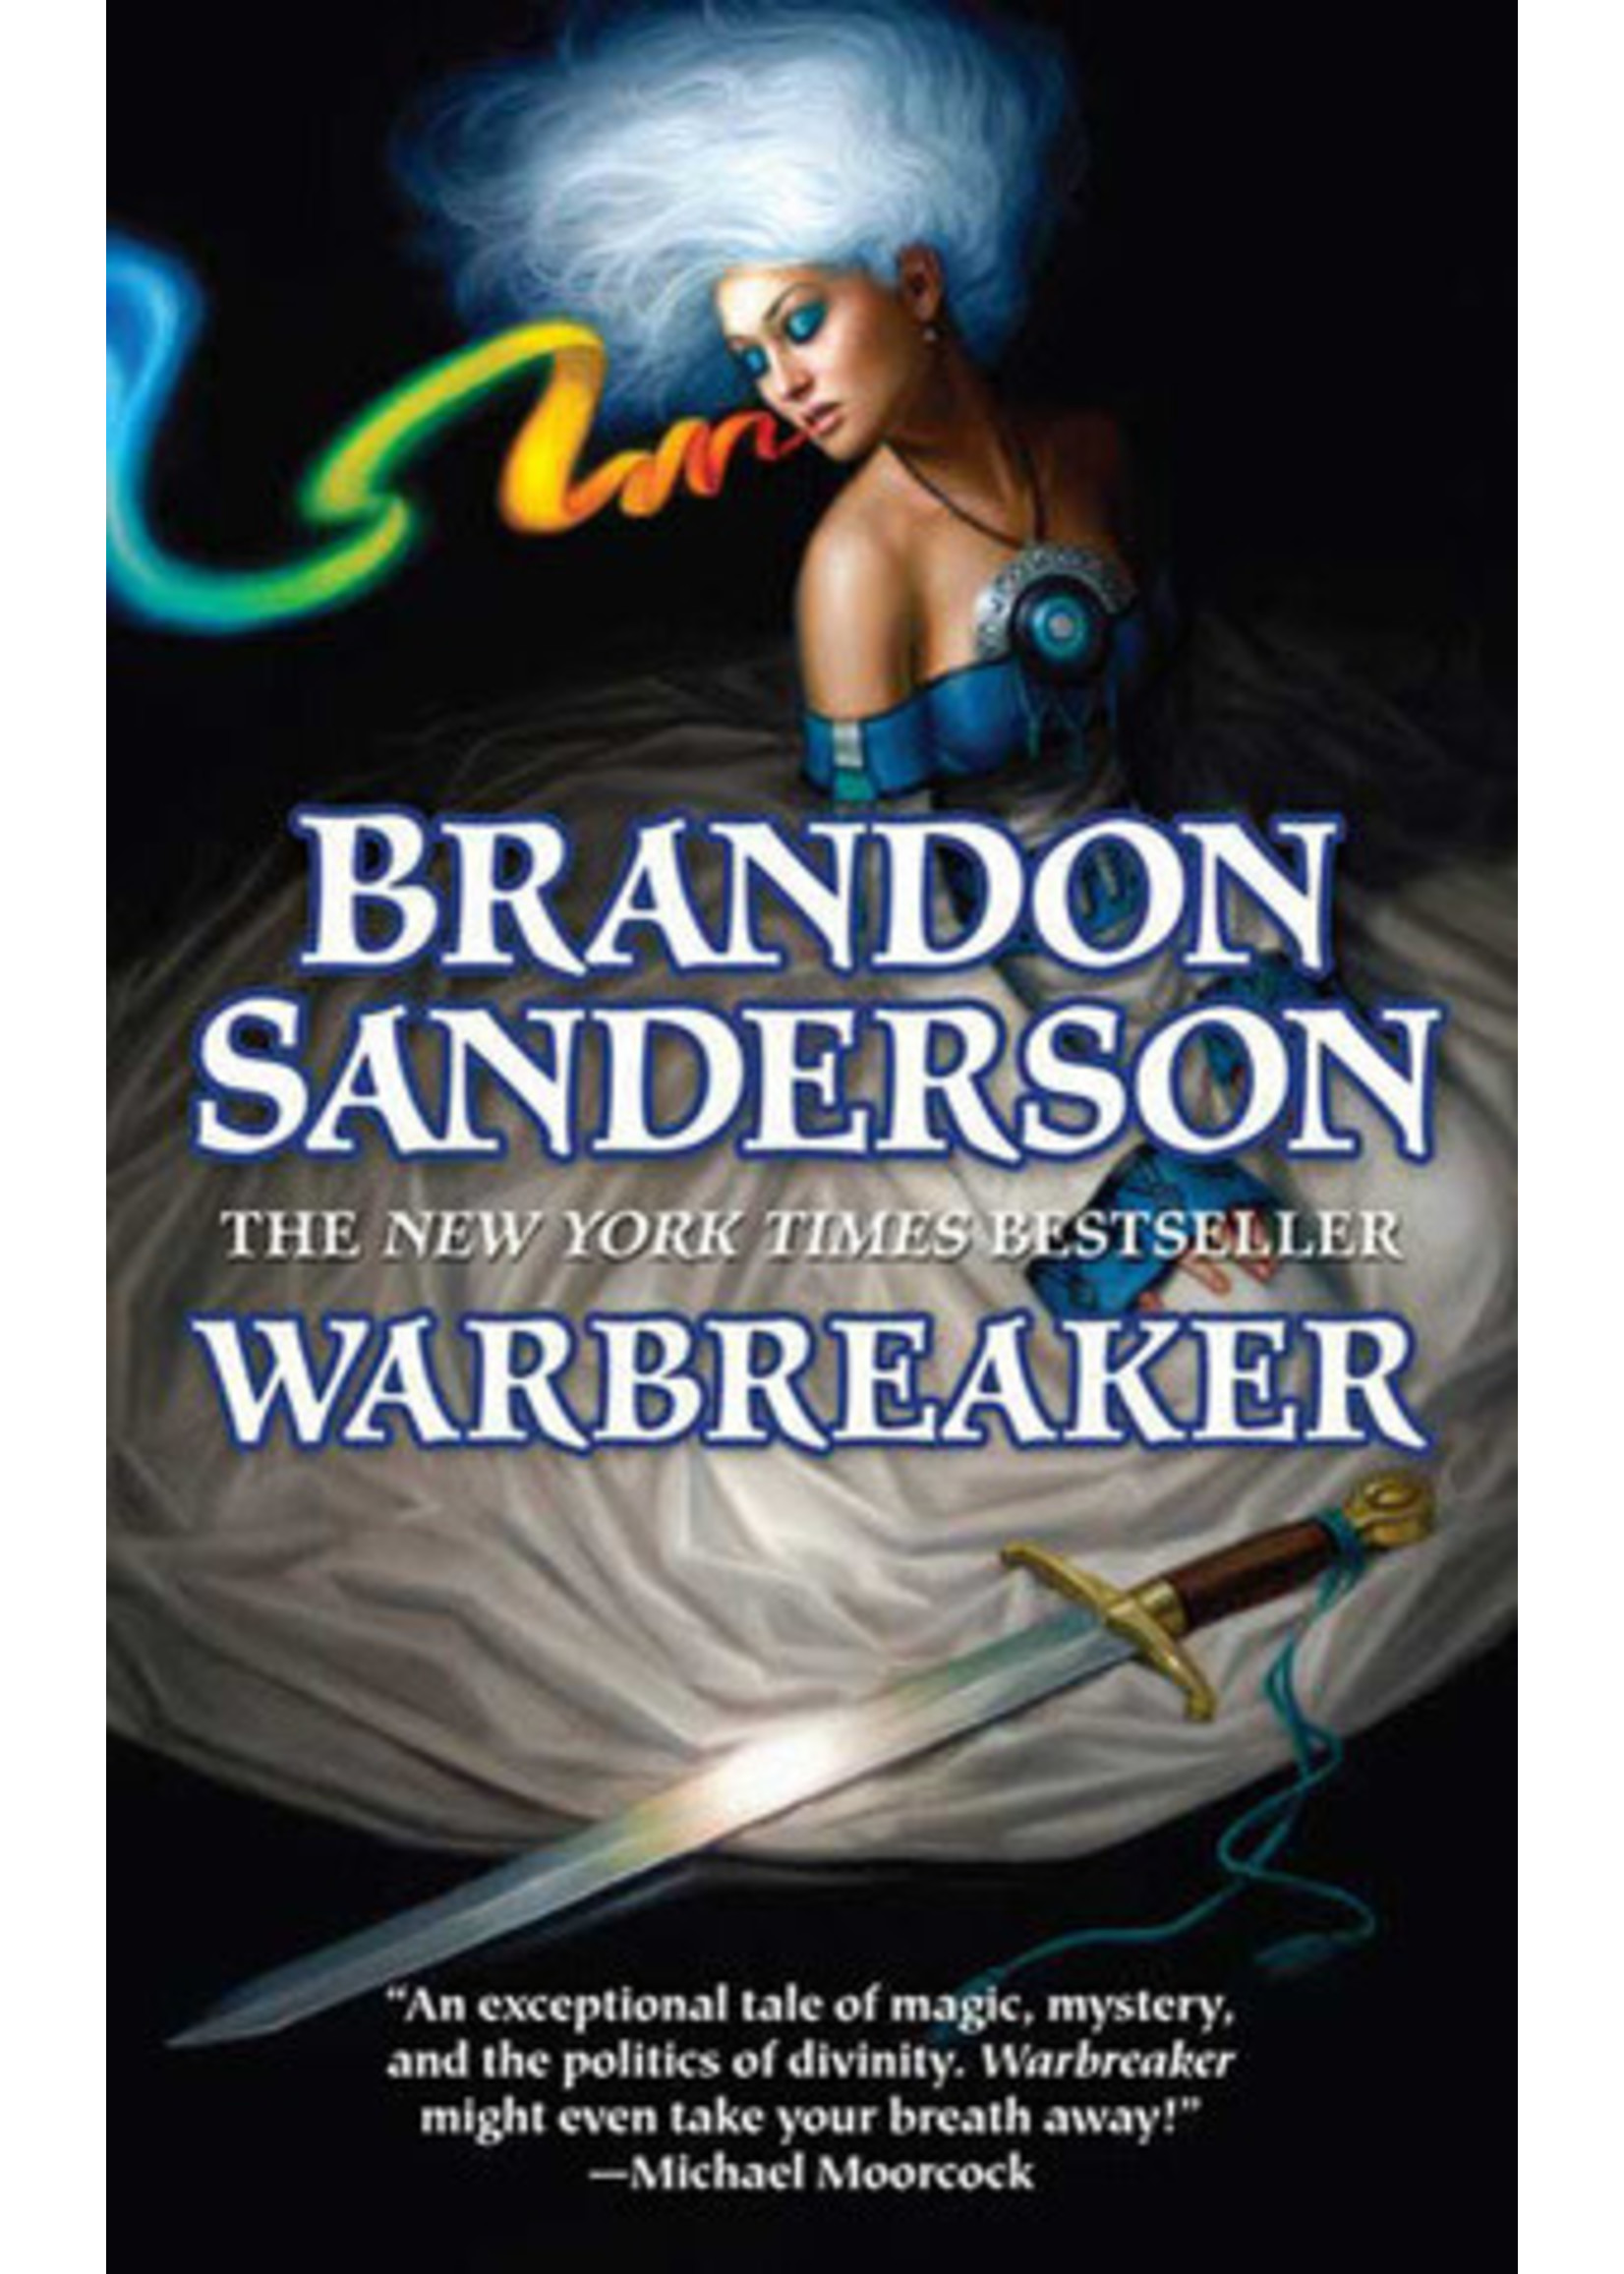 Warbreaker (Warbreaker #1) by Brandon Sanderson